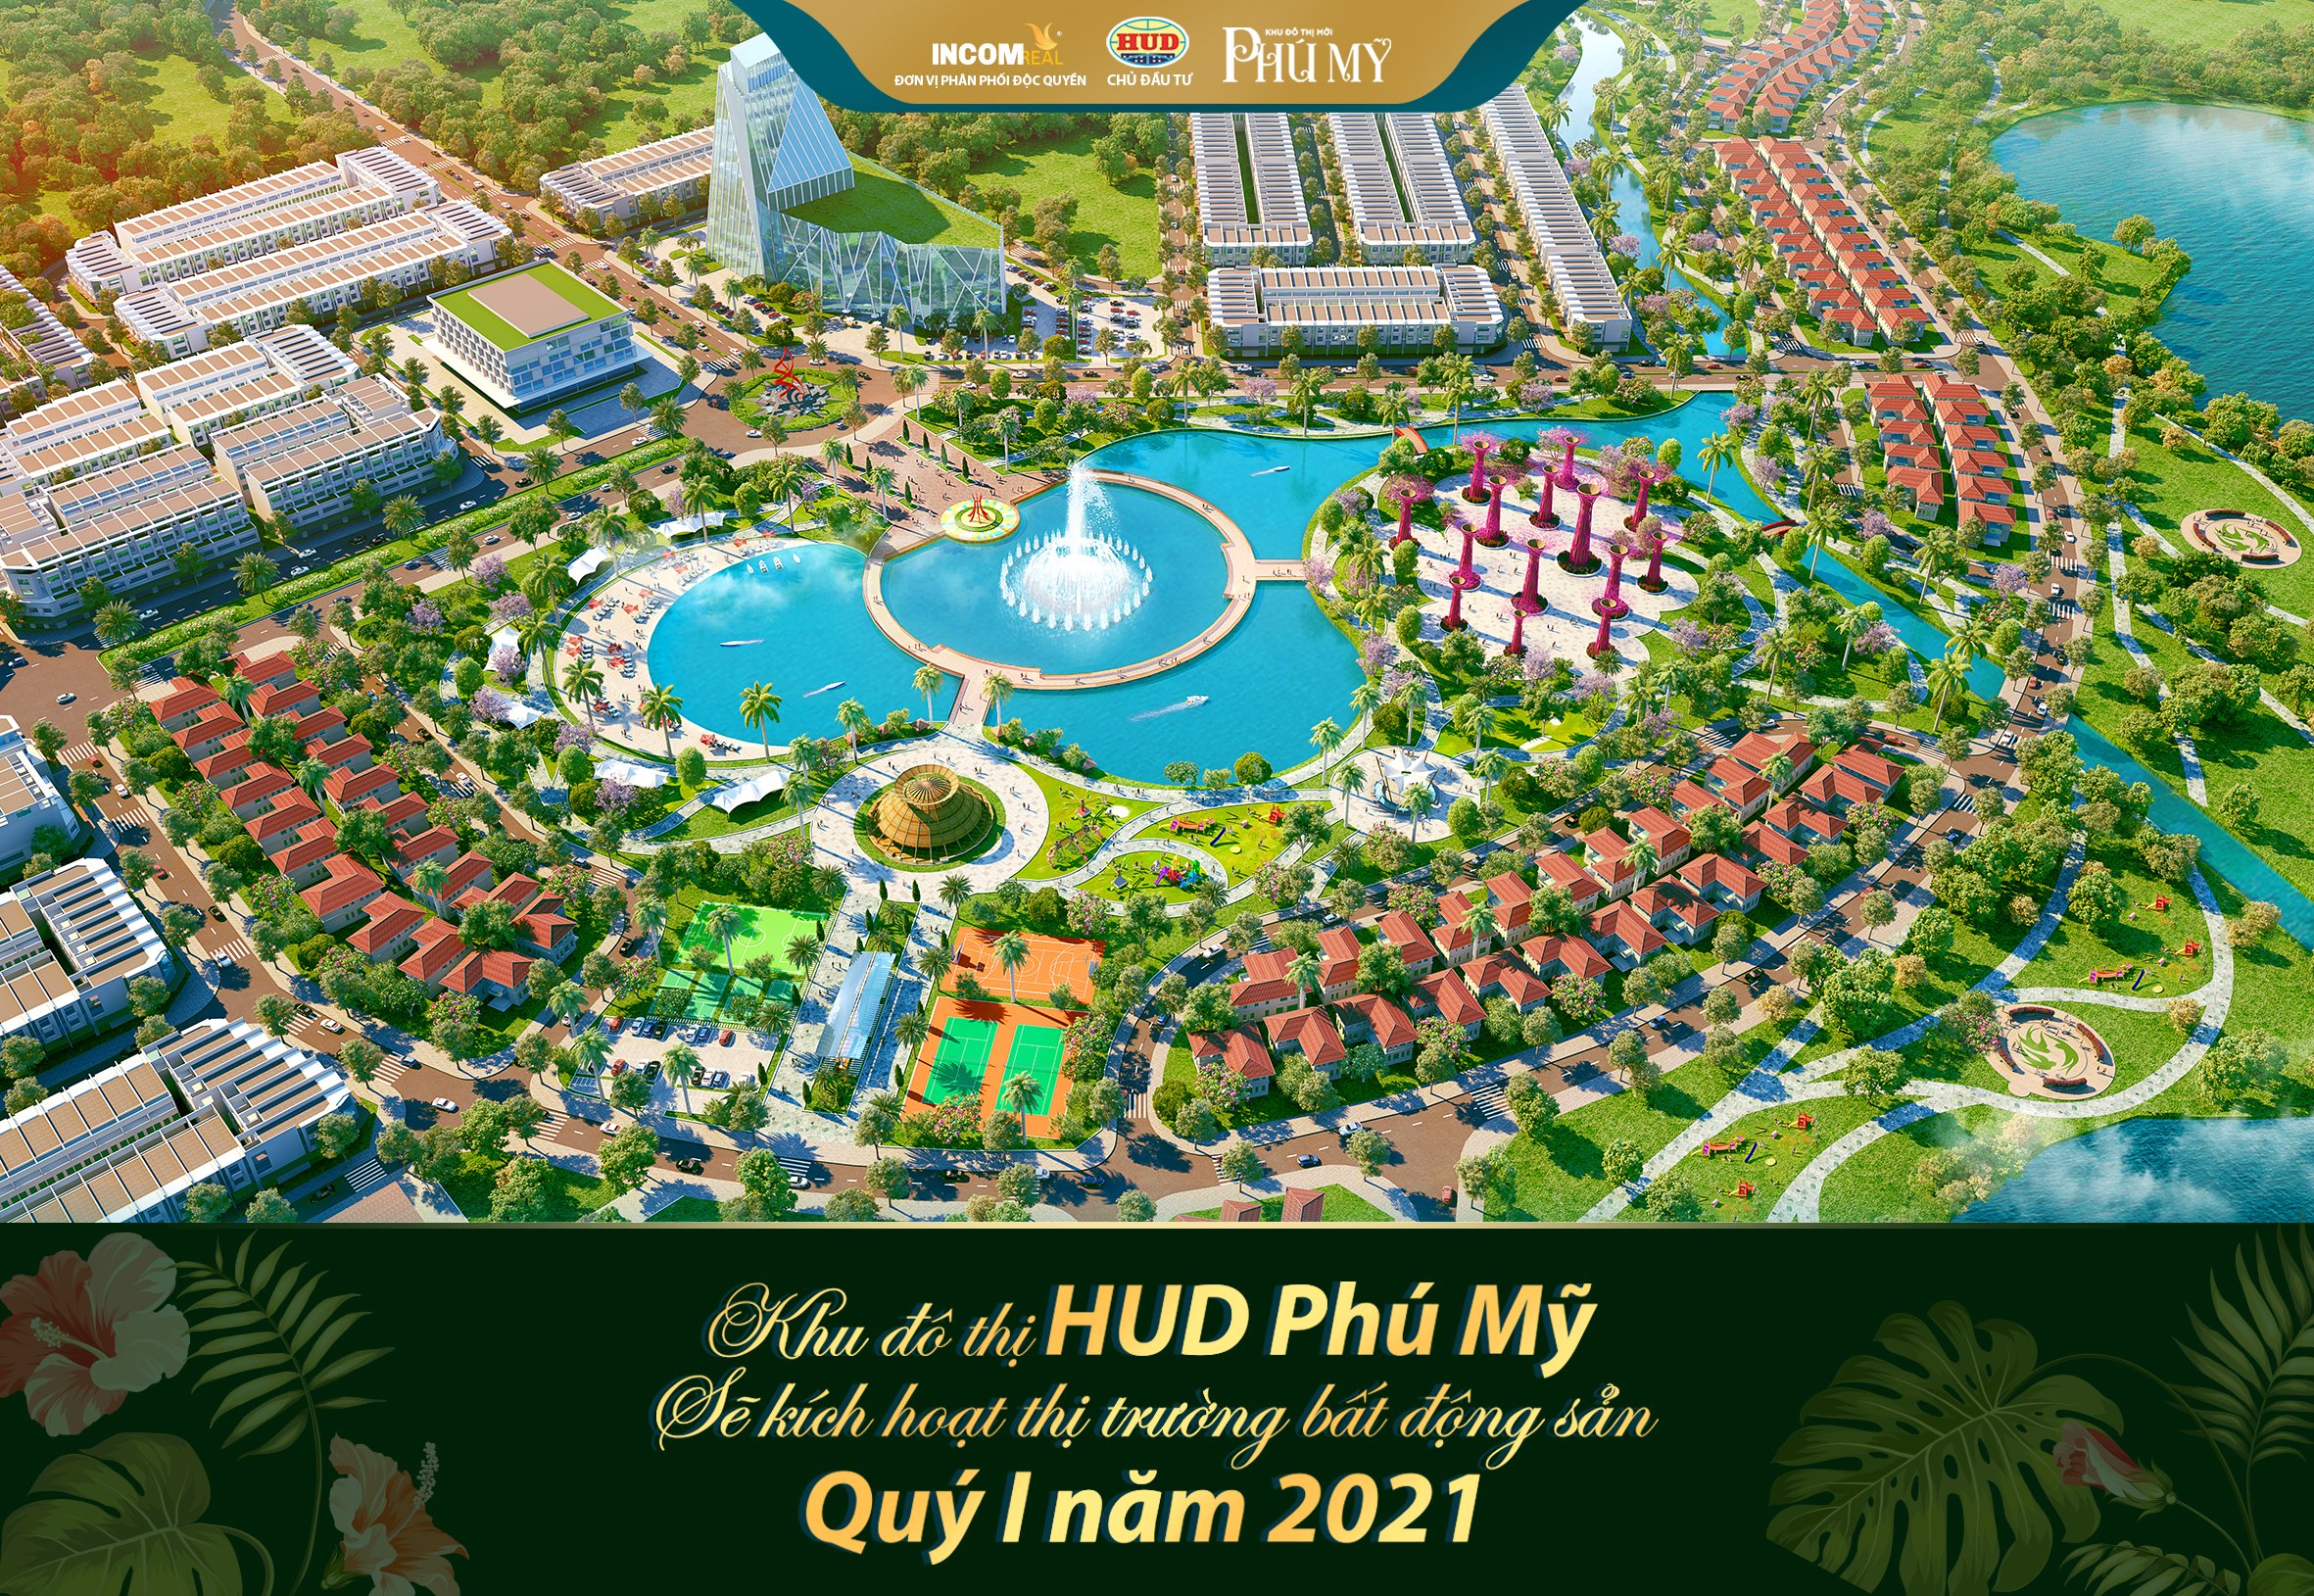 Tại Quảng Ngãi, khu đô thị HUD Phú Mỹ được nhận định sẽ là sản phẩm “kích hoạt” thị trường bất động sản quý I năm 2021.